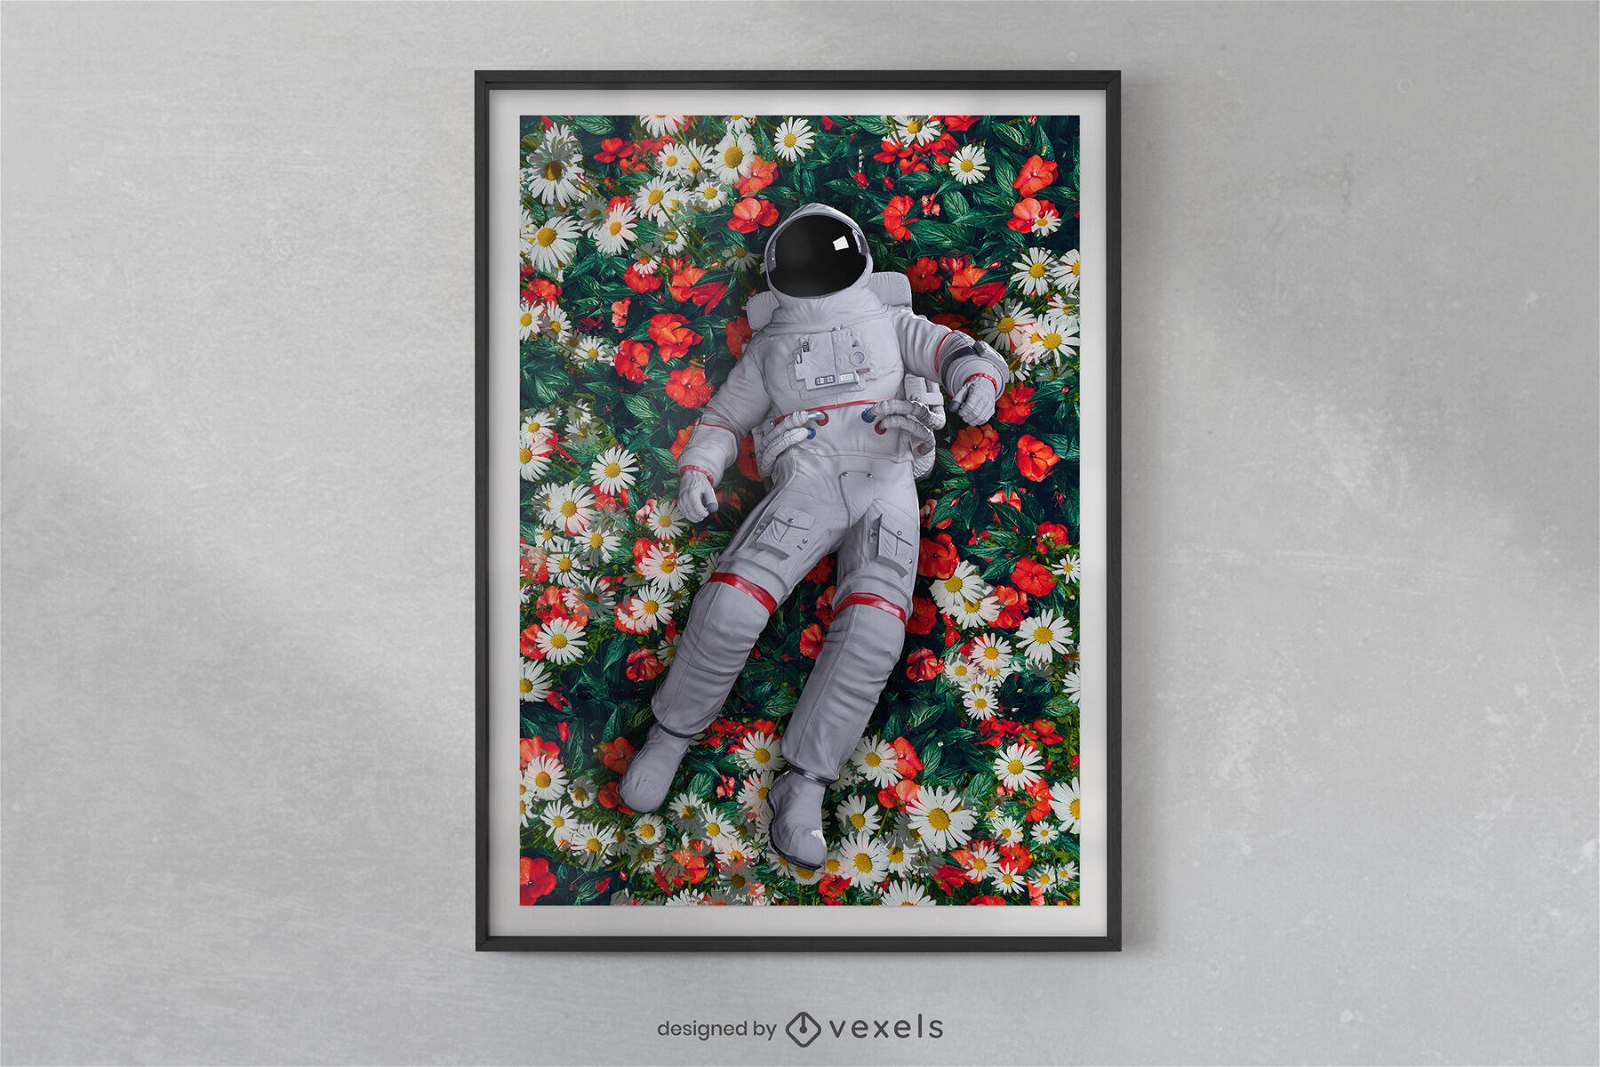 Astronauta deitado no design do cartaz do espa?o de flores